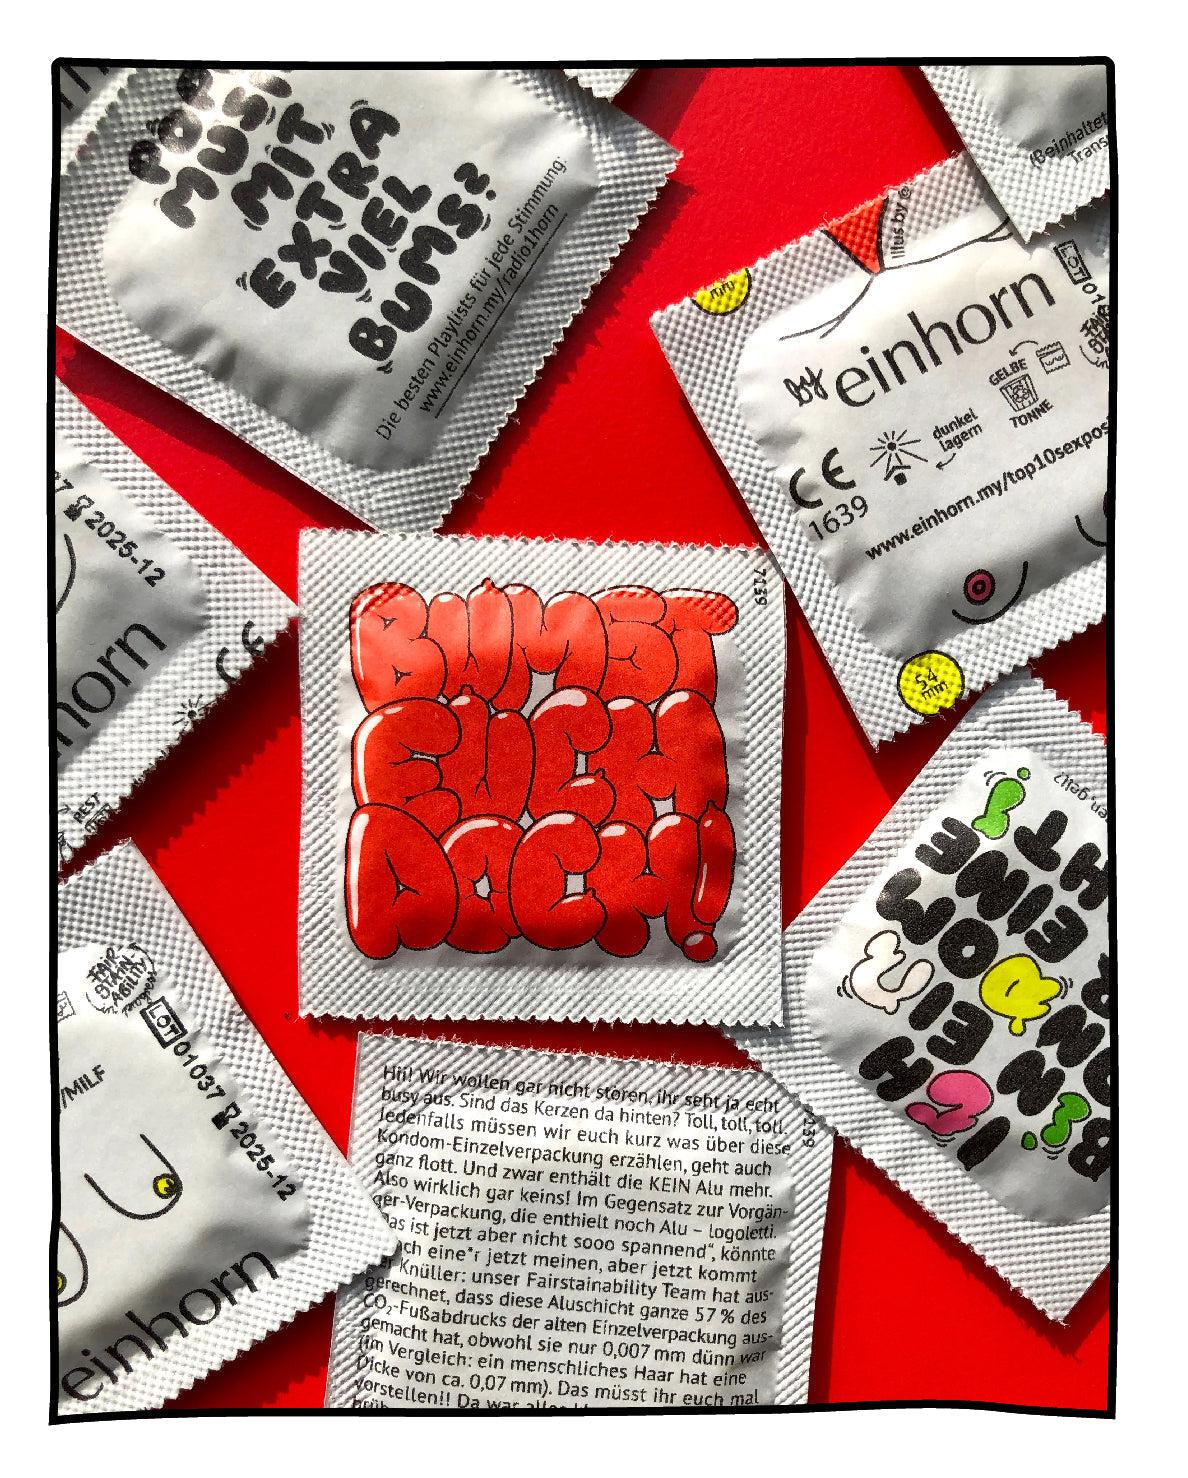 BALI Kondompackung-Kondome-einhorn-LAPONDO